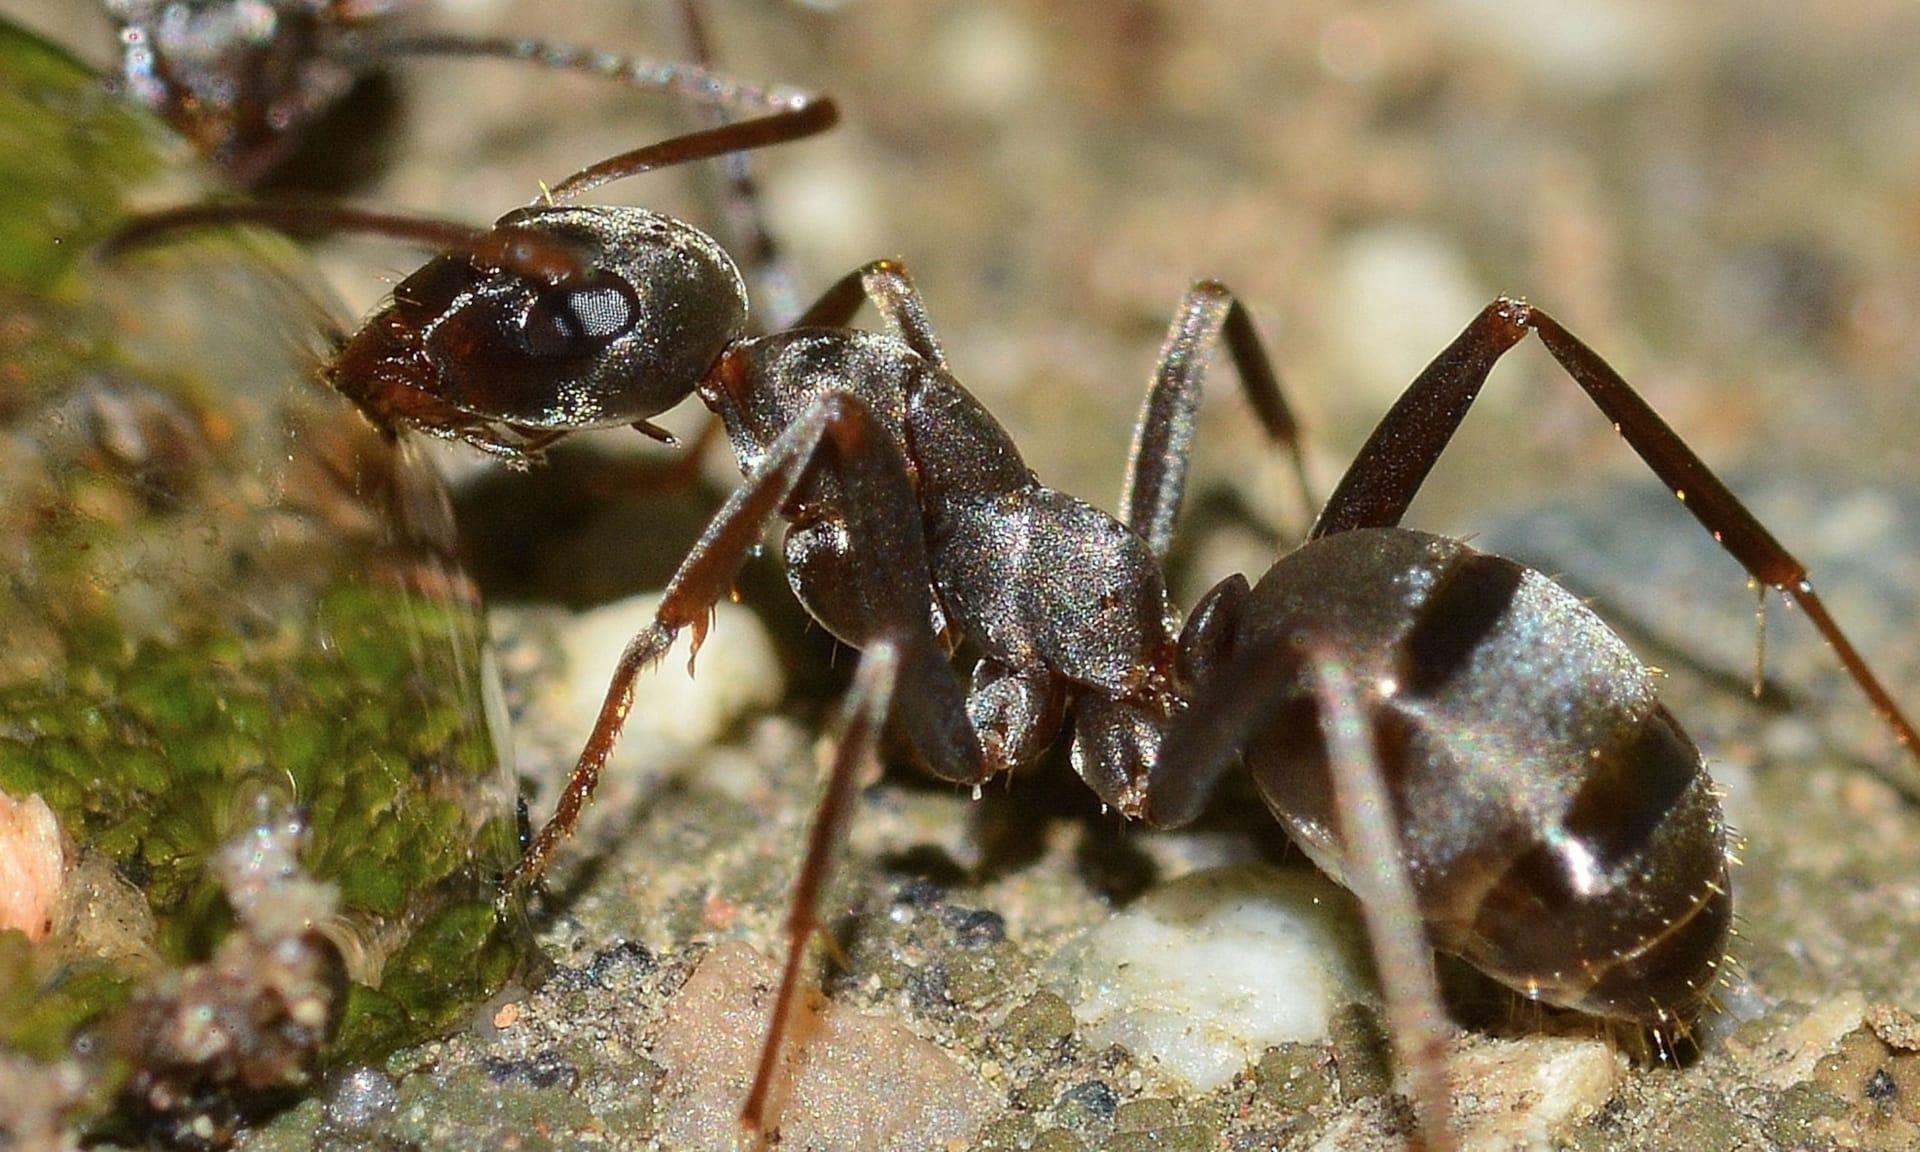 Queen ants pictures